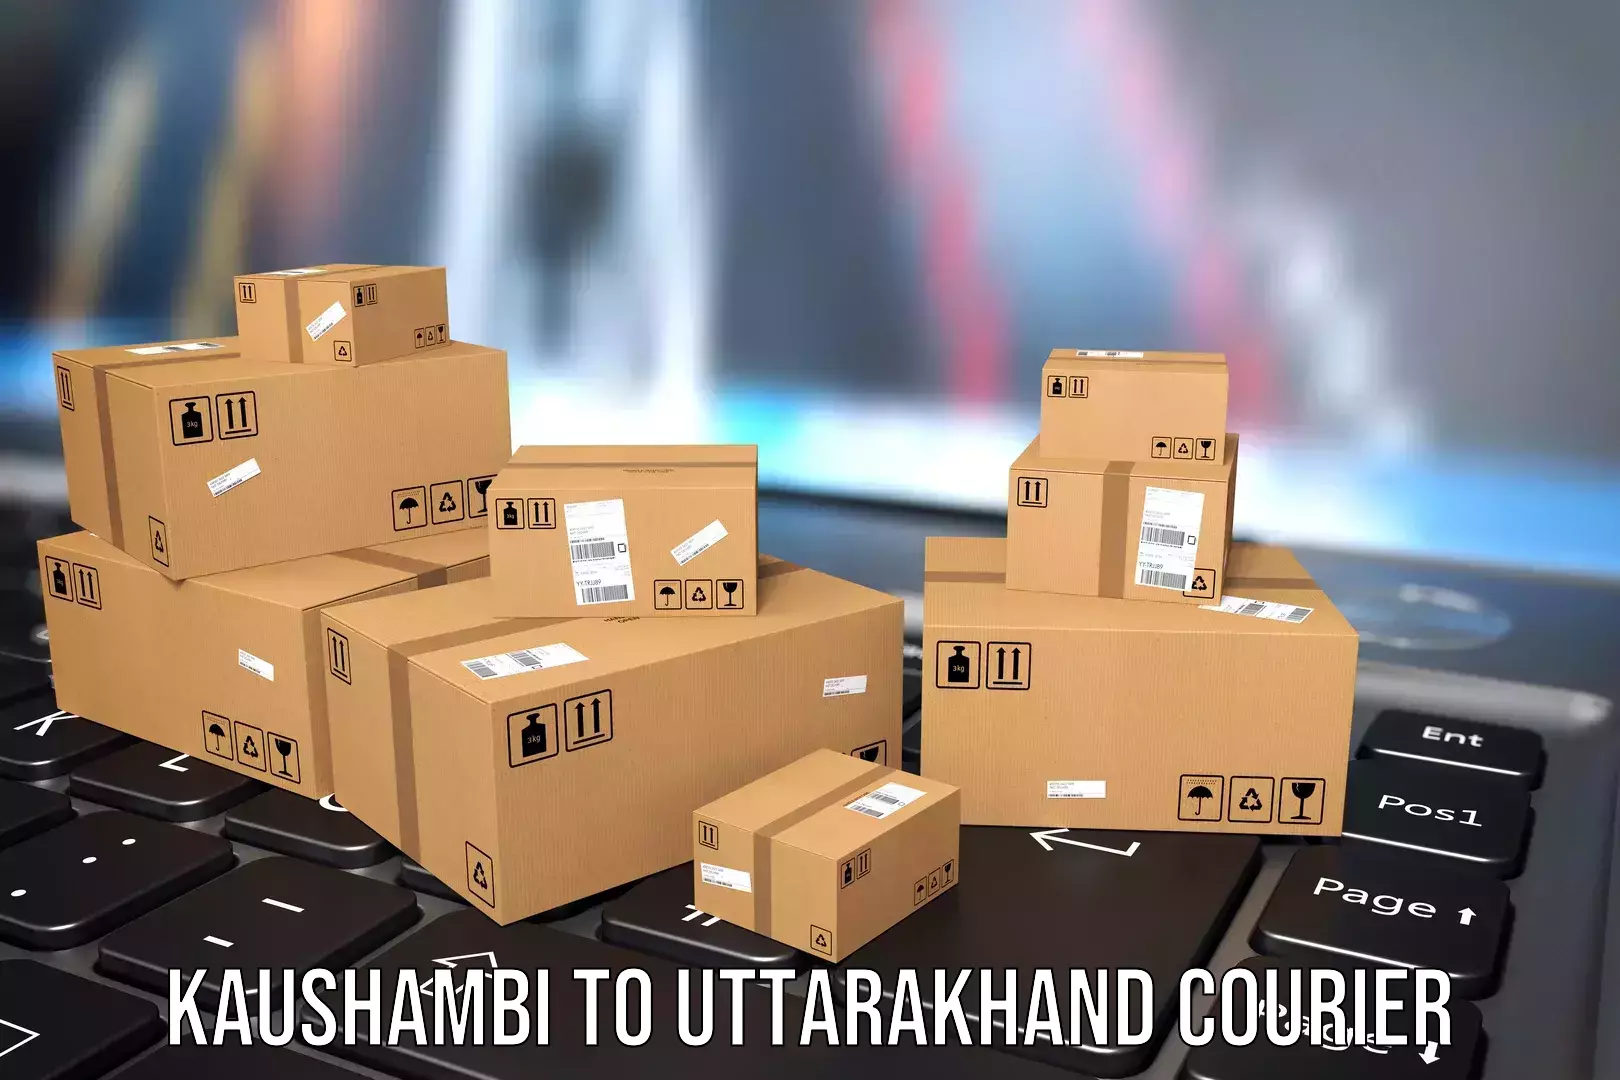 Luggage transfer service Kaushambi to Uttarakhand